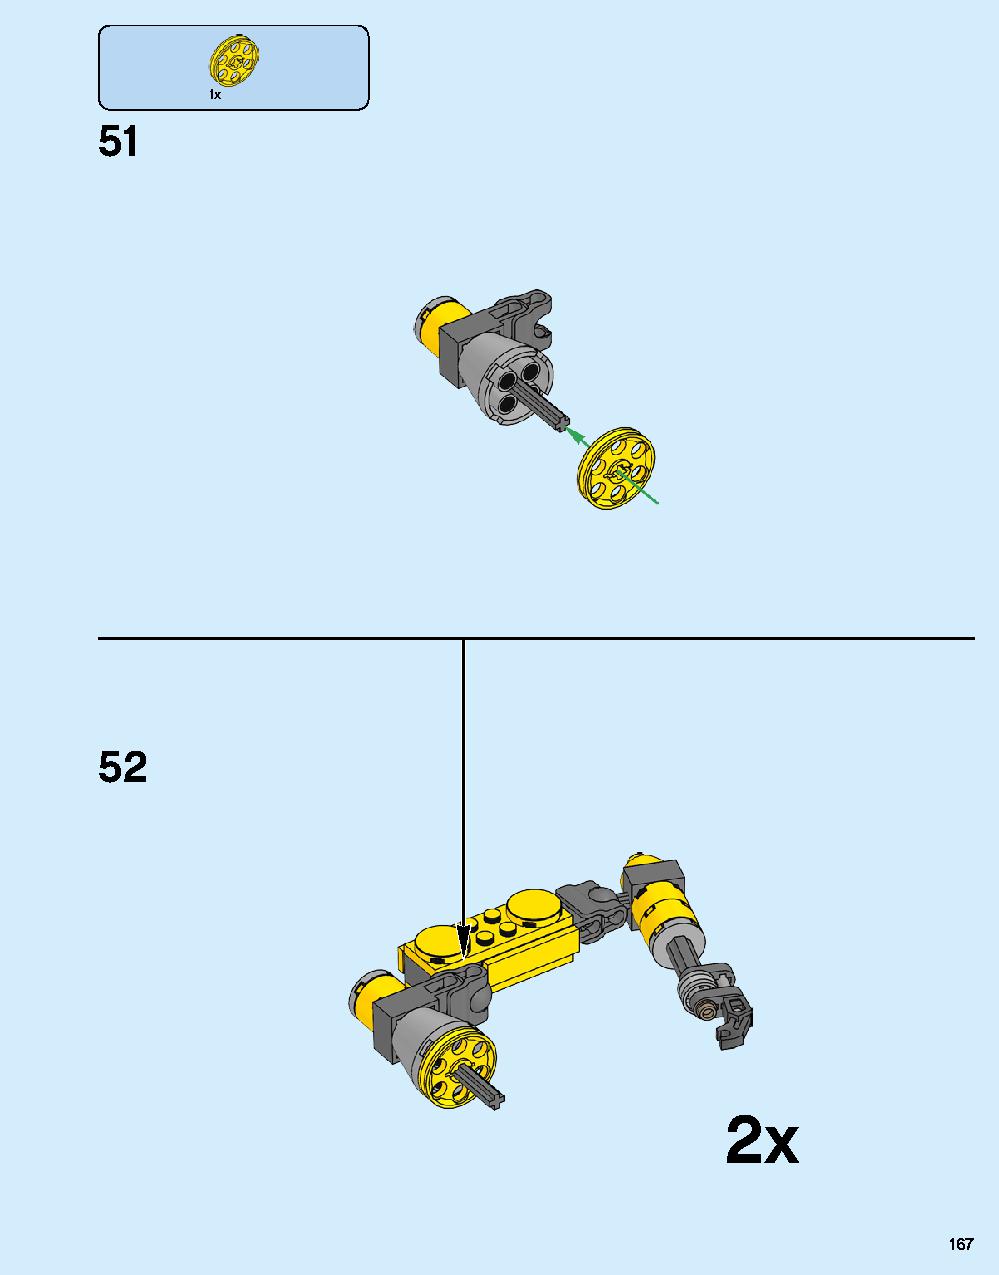 어벤져스 헐크버스터: 울트론 에디션 76105 레고 세트 제품정보 레고 조립설명서 167 page